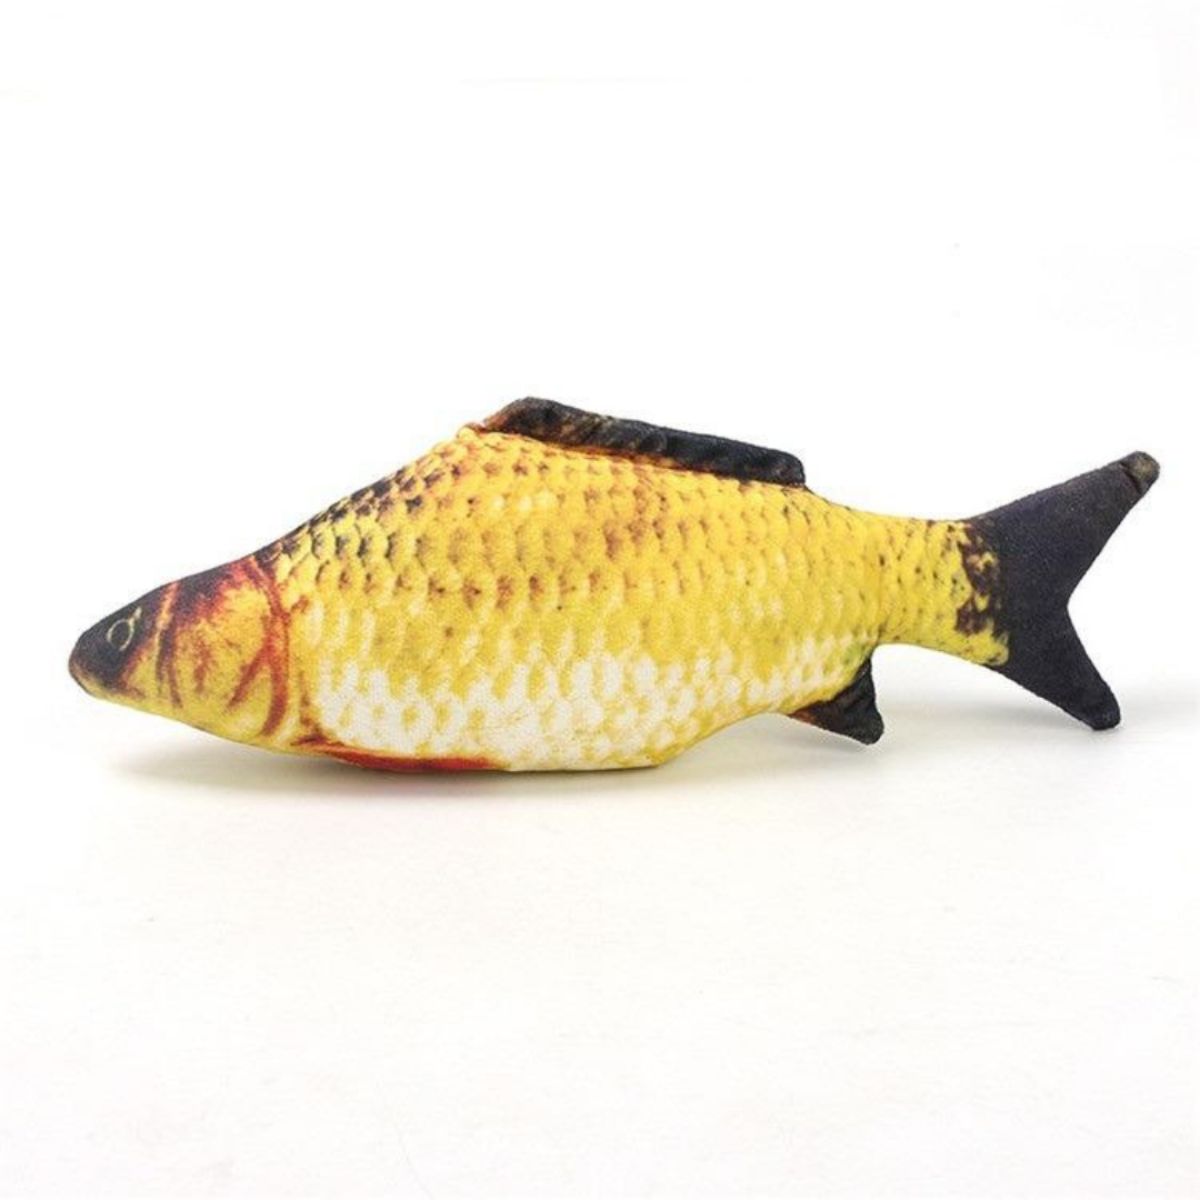 Floppy fish dog toy Crucian carp